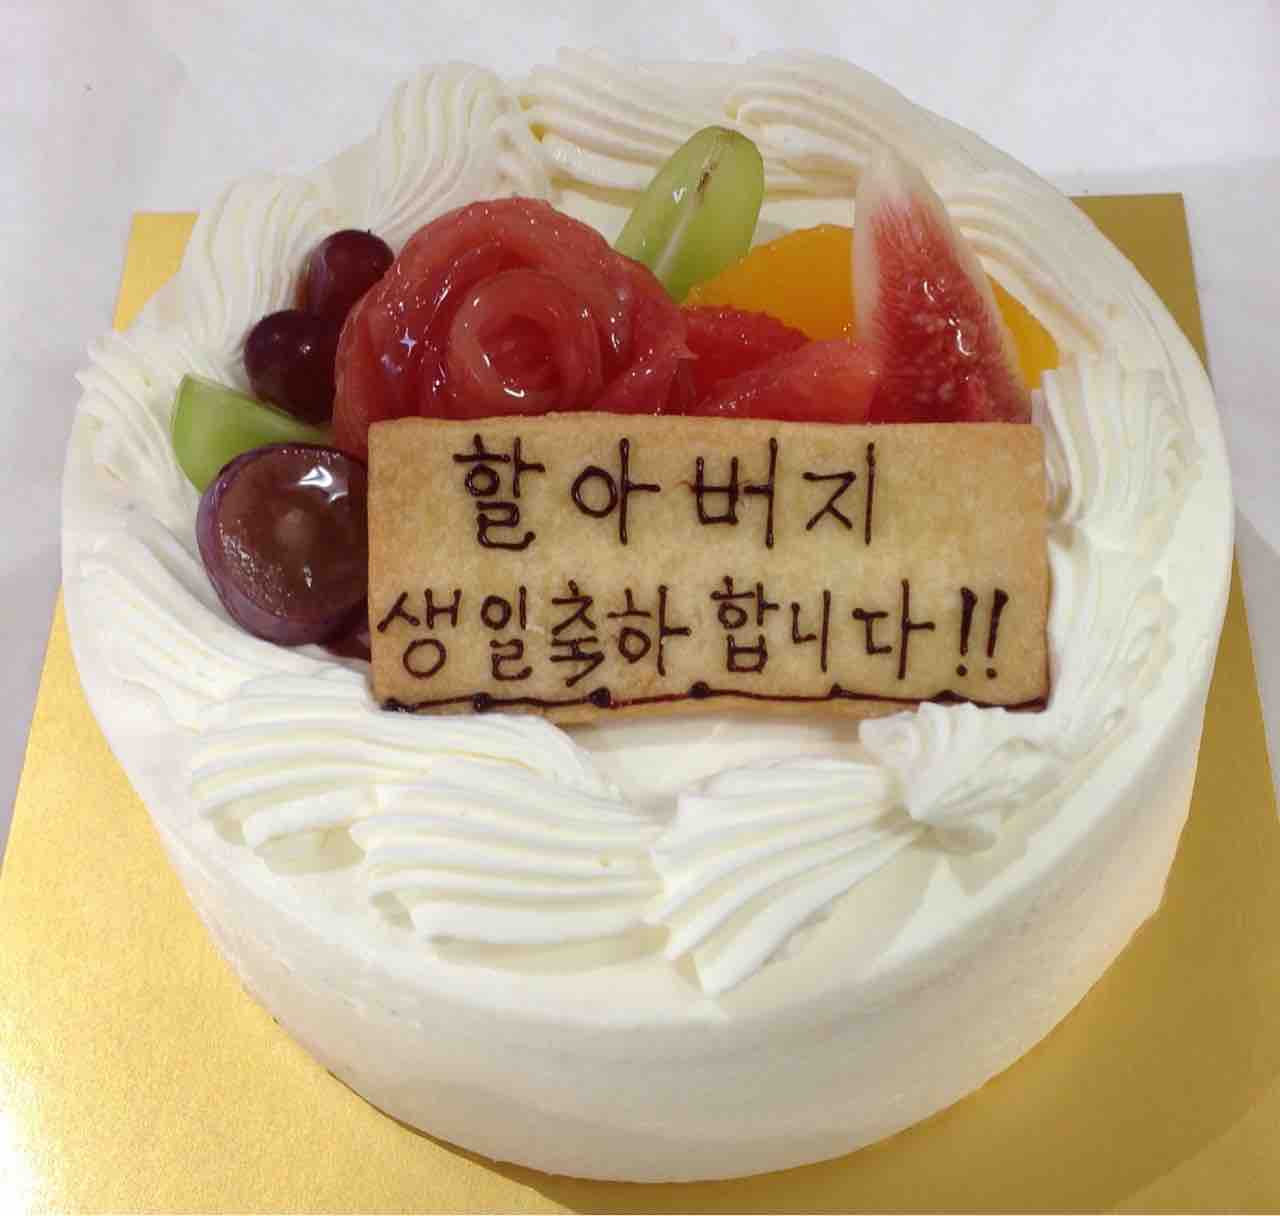 驚くばかりお 誕生 日 おめでとう ござい ます 韓国 語 最高の壁紙hd